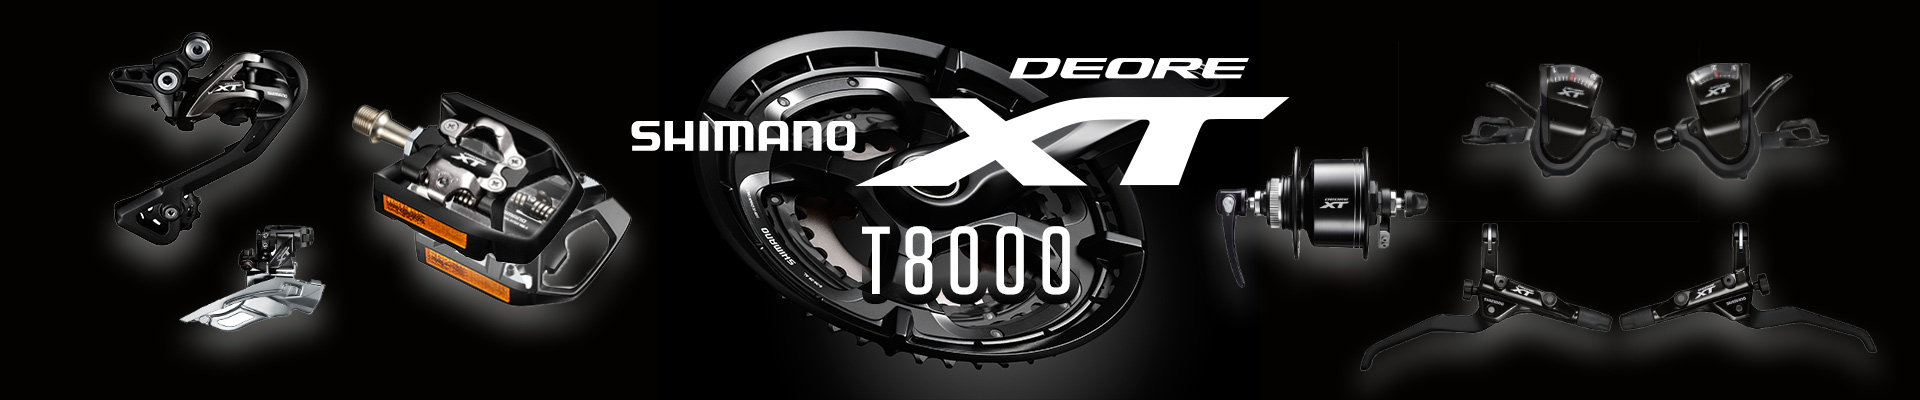 SHIMANO DEORE XT T8000